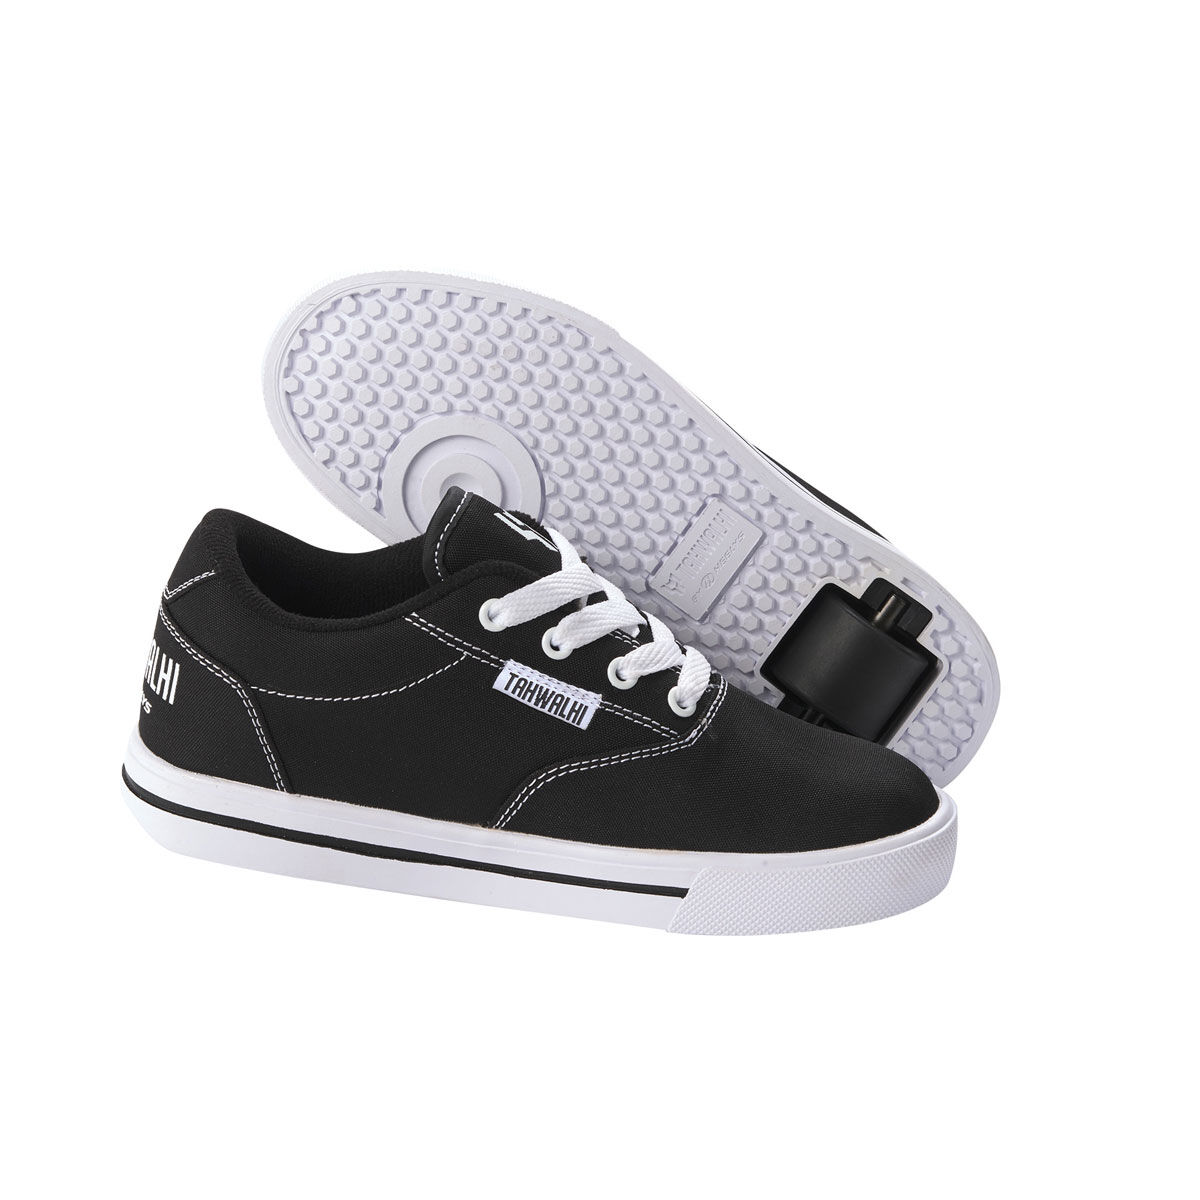 Heelys Heelys canvas skate shoes size 13 